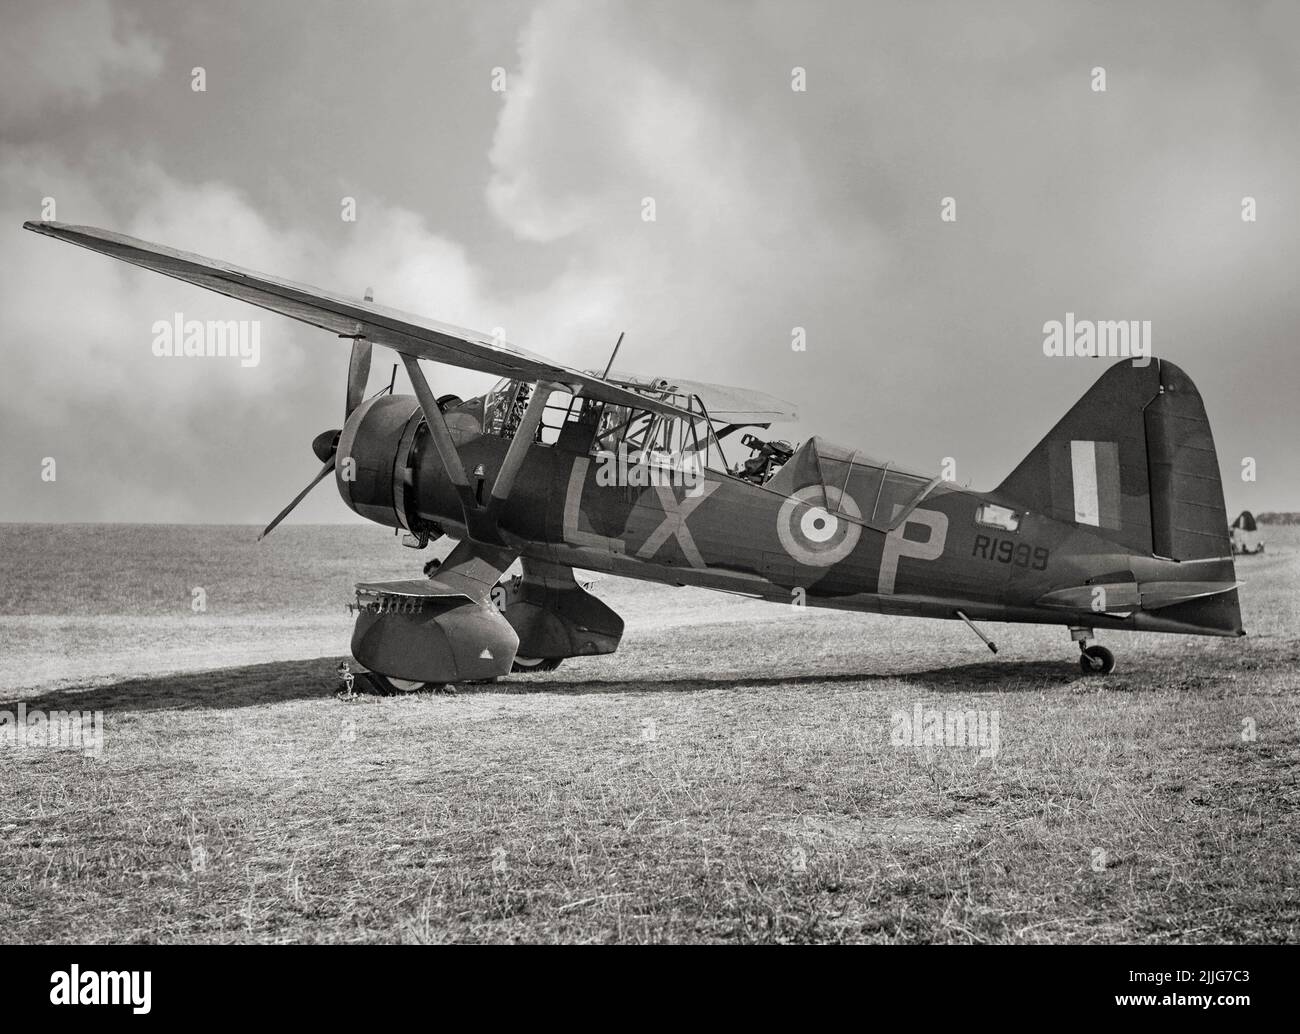 A Westland Lysander Mark II di No. 225 Squadron RAF, in fase di manutenzione a Tilshead, Wiltshire. Notare la mitragliatrice Lewis Mark III sul suo supporto Fairey nel cockpit posteriore. L'aereo era un aereo di collegamento e di cooperazione dell'esercito britannico usato immediatamente prima e durante la seconda guerra mondiale. Dopo essere diventato obsoleto nel ruolo di cooperazione dell'esercito, le prestazioni del velivolo a corto campo hanno permesso missioni clandestine utilizzando piccole, improvvisate strisce aeree dietro le linee nemiche per collocare o recuperare agenti, in particolare nella Francia occupata. Foto Stock